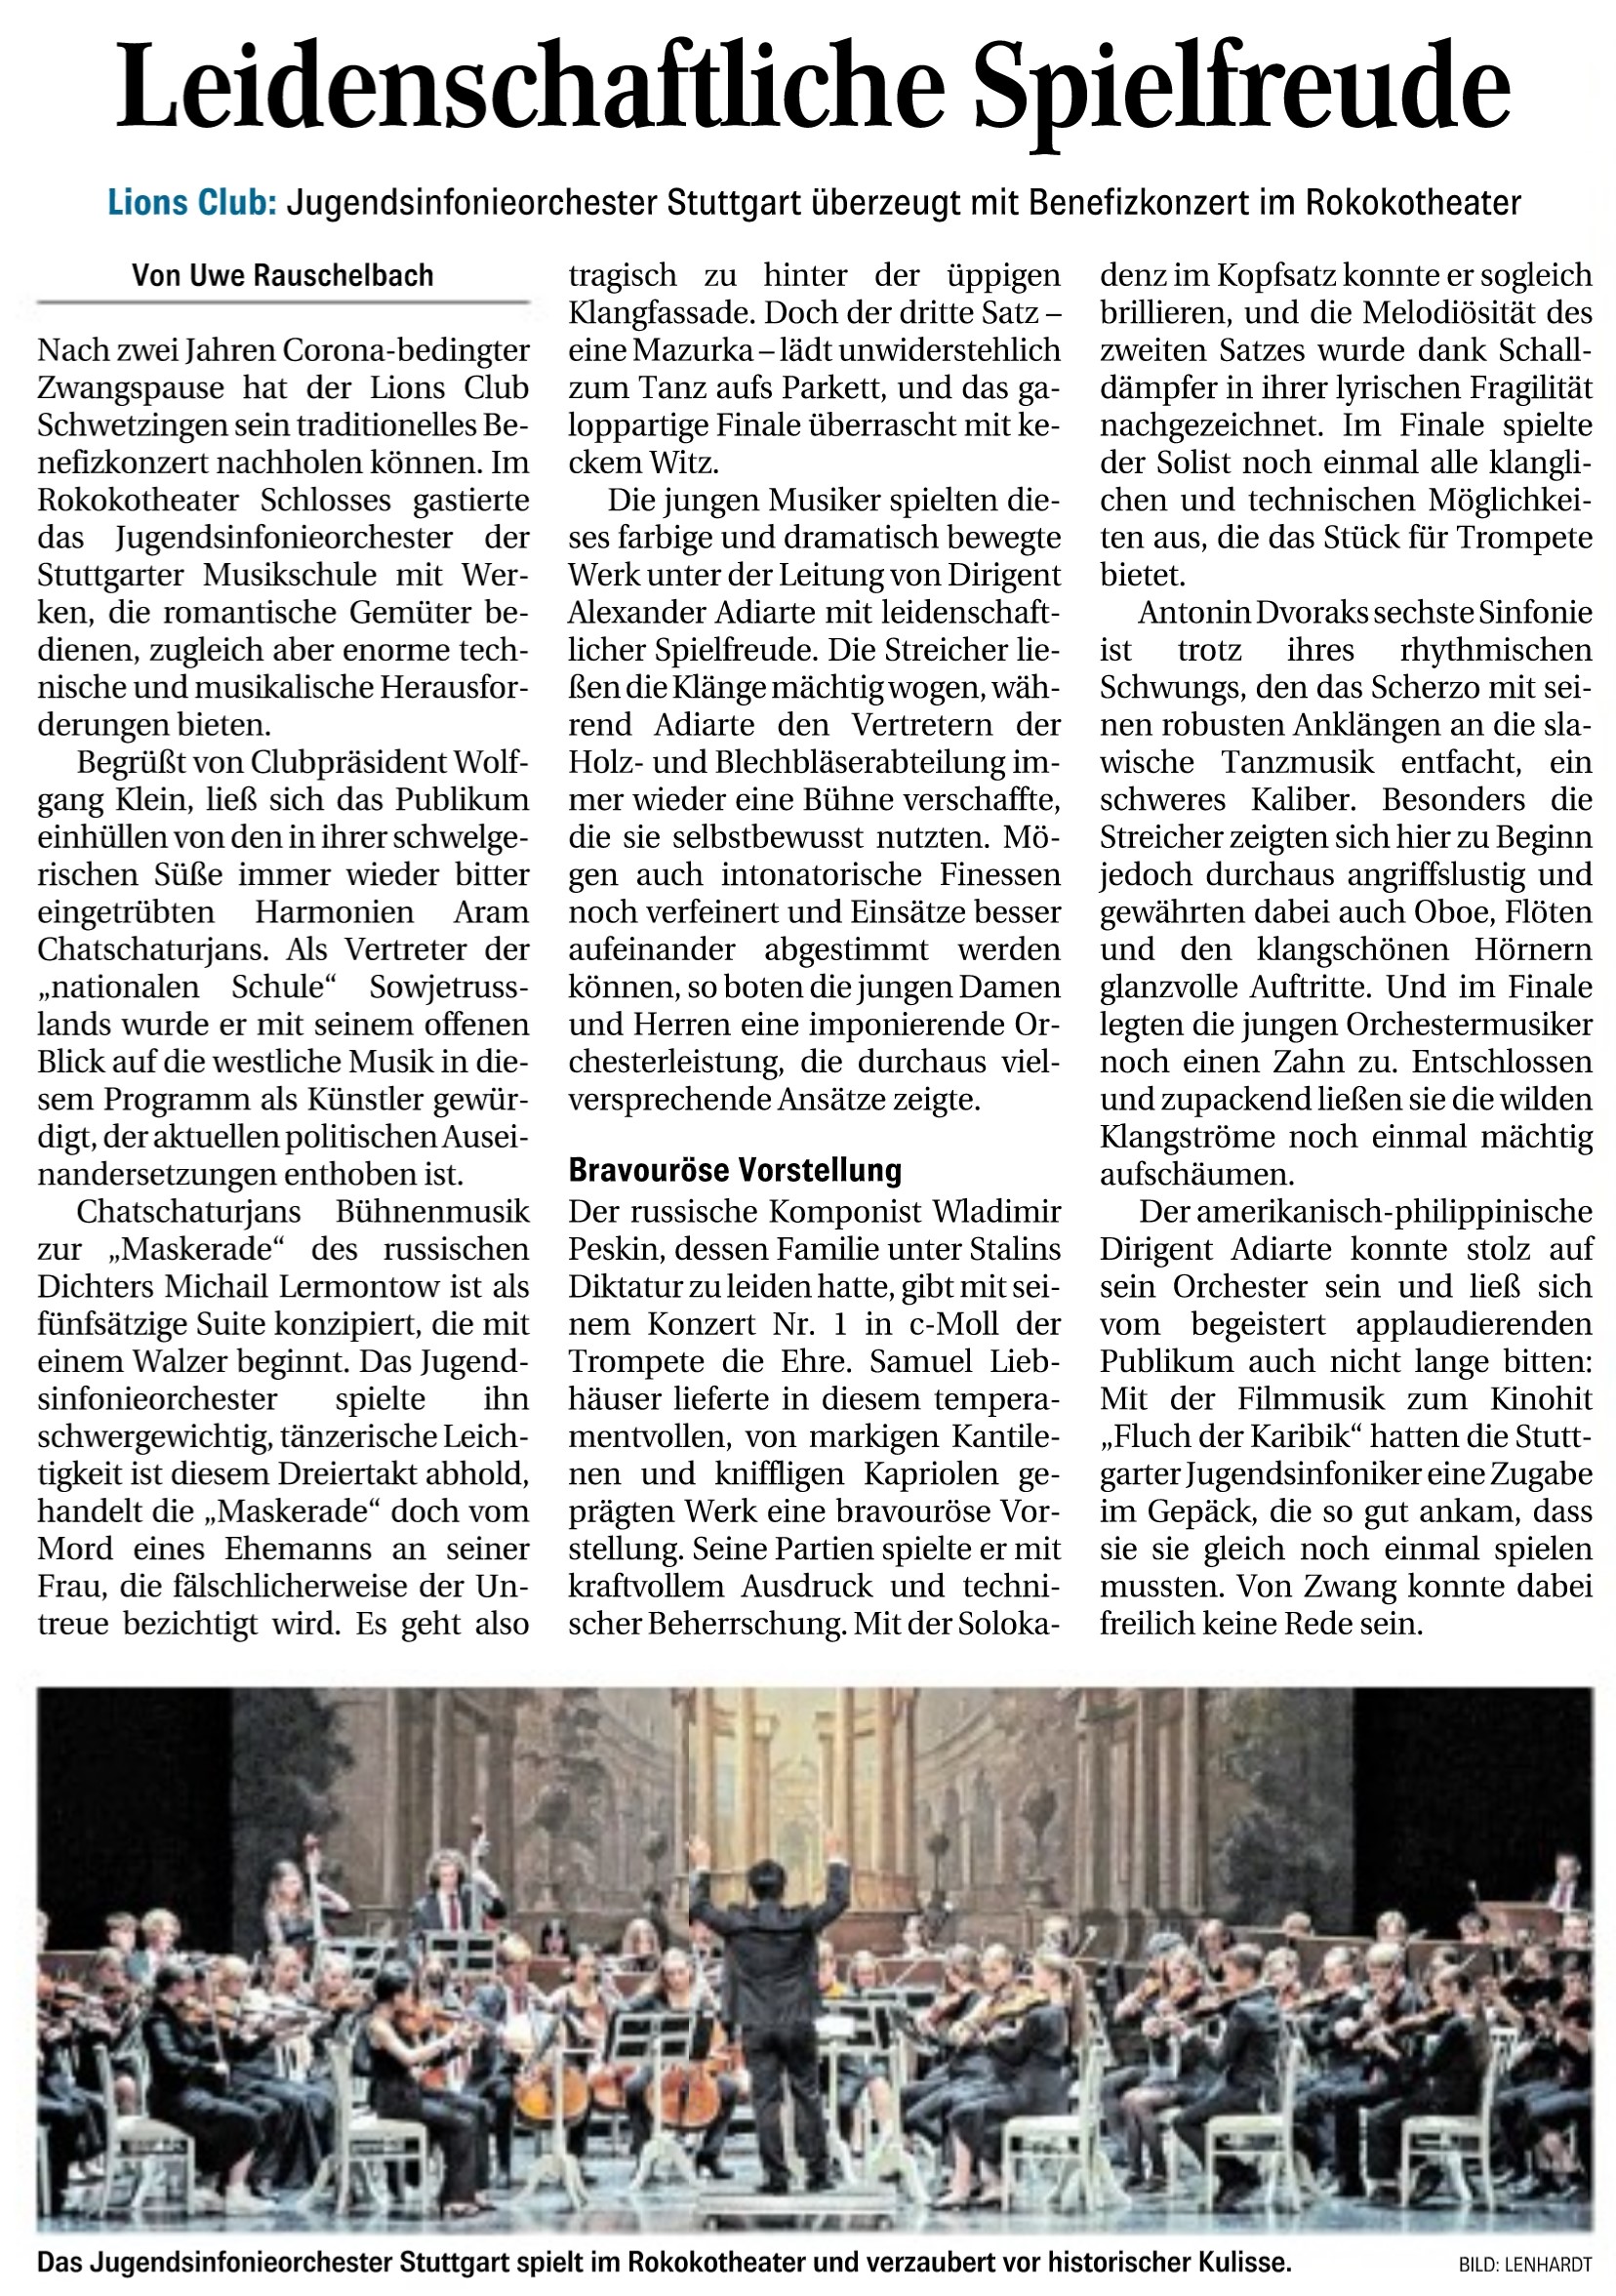 Artikel in der Schwetzinger Zeitung über das Benefizkonzert im Rokokotheater